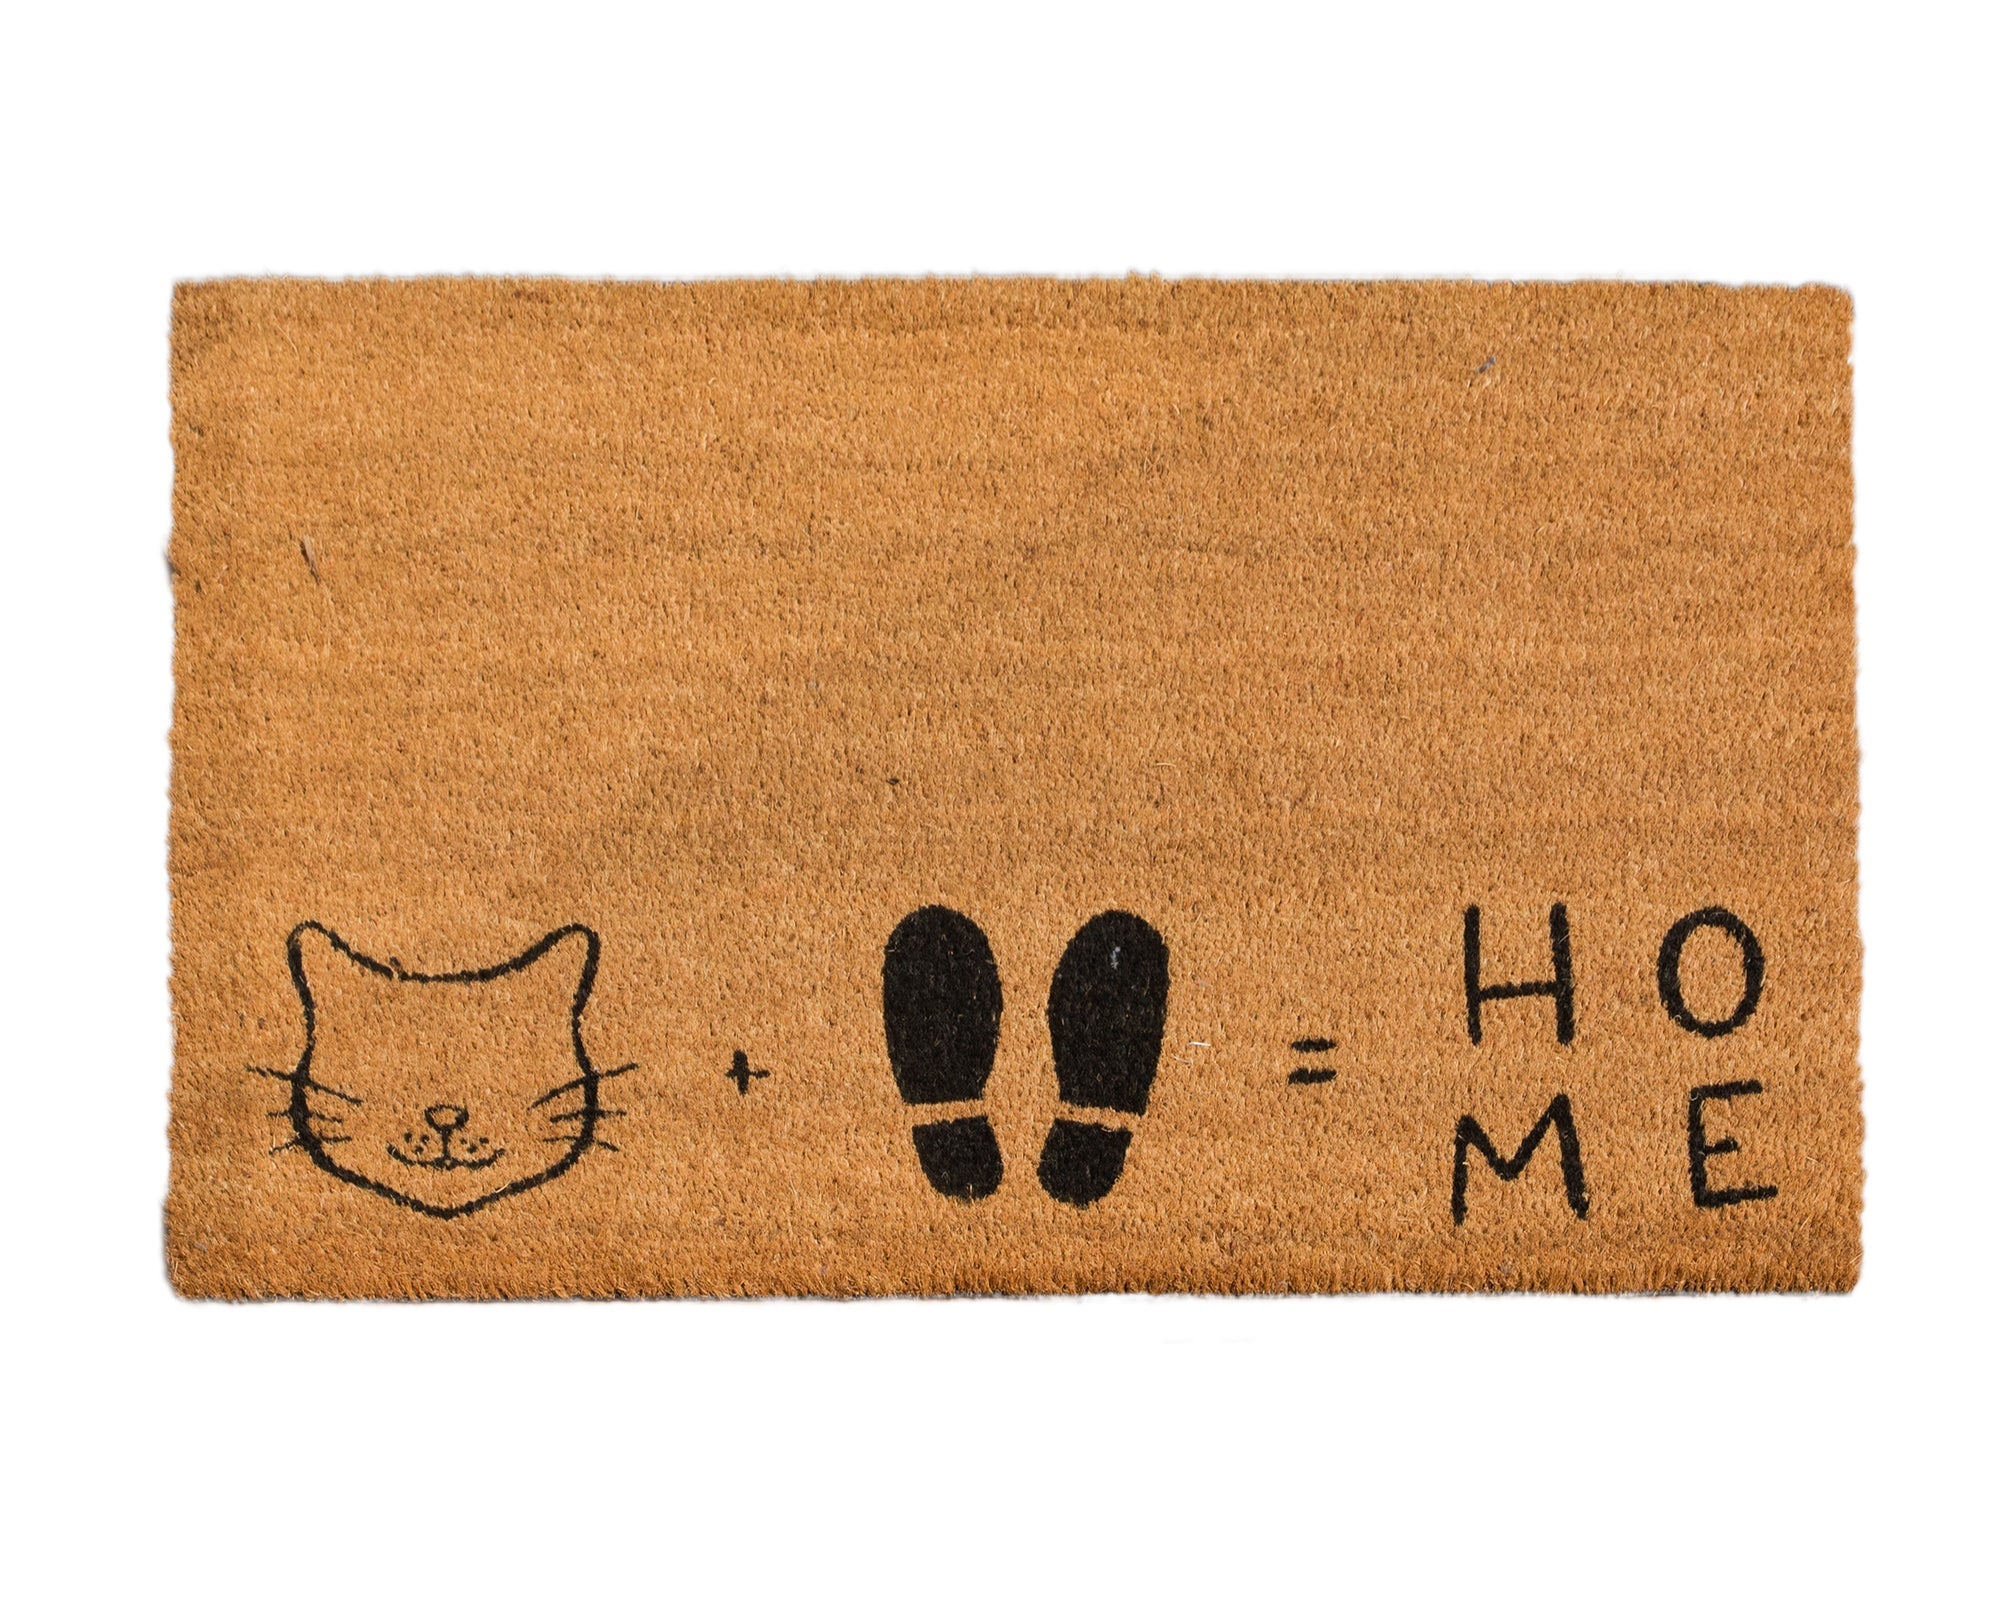 4CatsnDogs- Convertible Entrance Mat "Cat + Feet = Home"